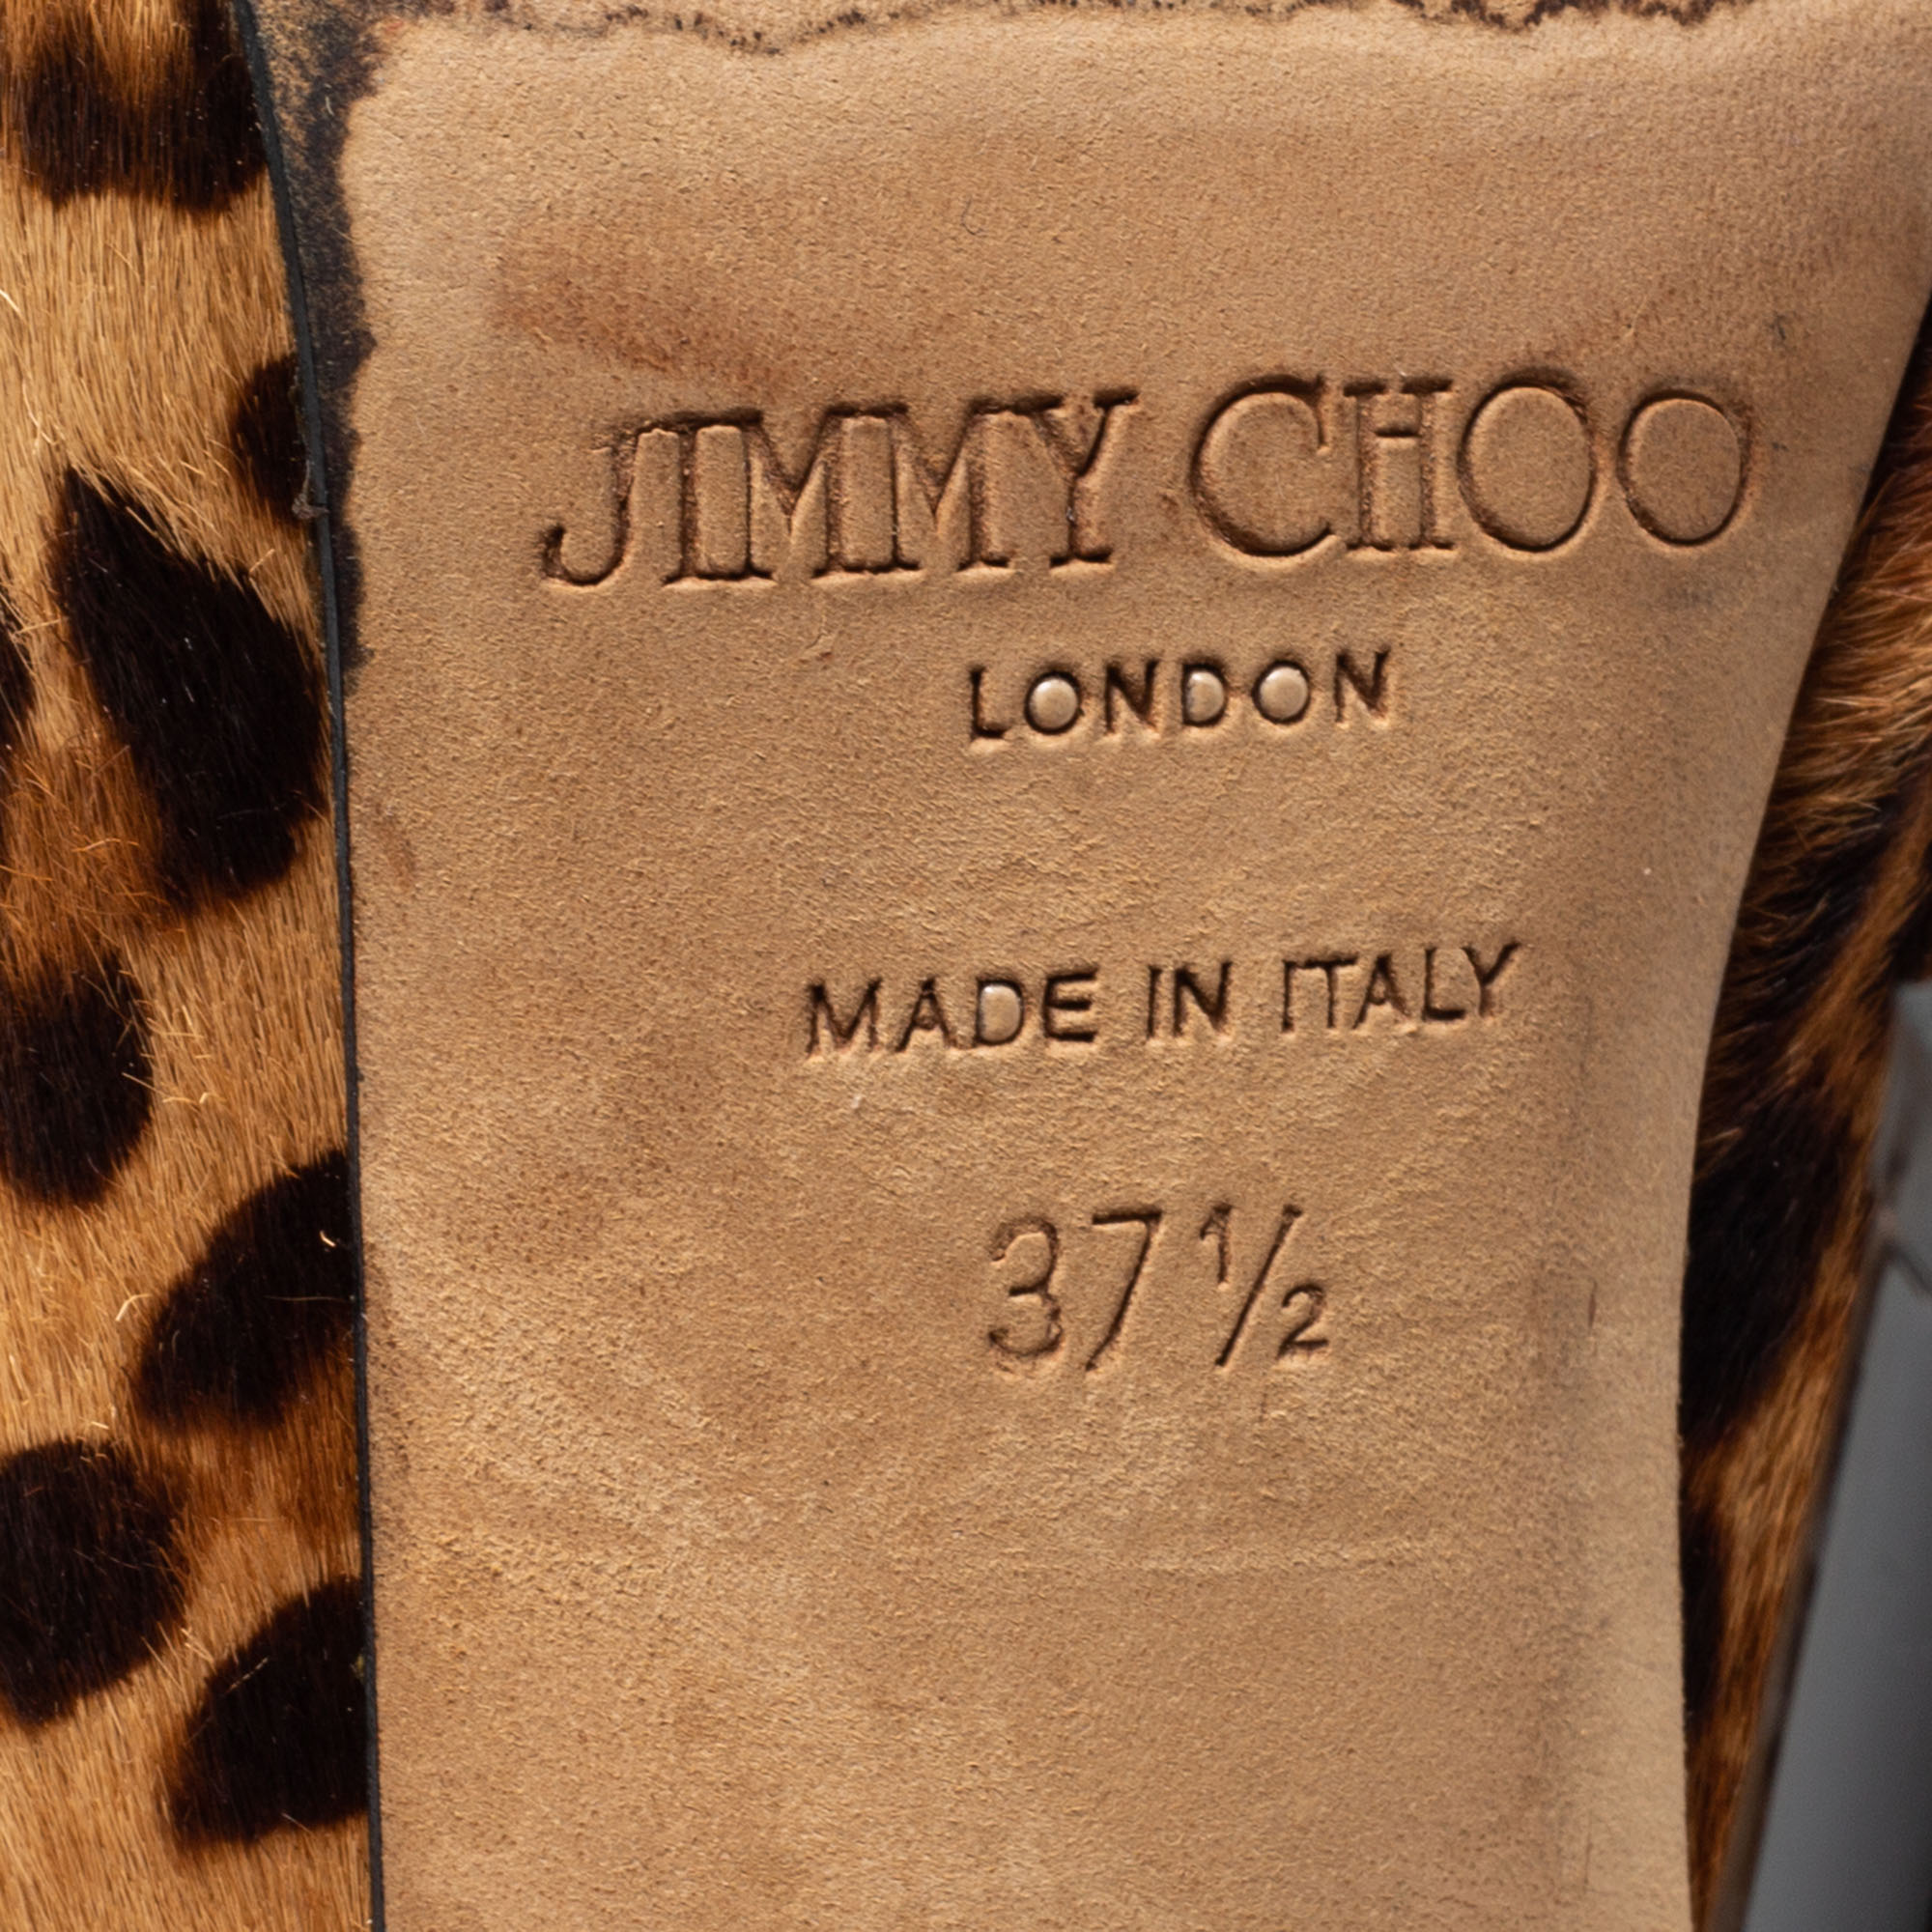 Jimmy Choo Beige/Brown Leopard Print Calf Hair Ankle Booties Size 37.5